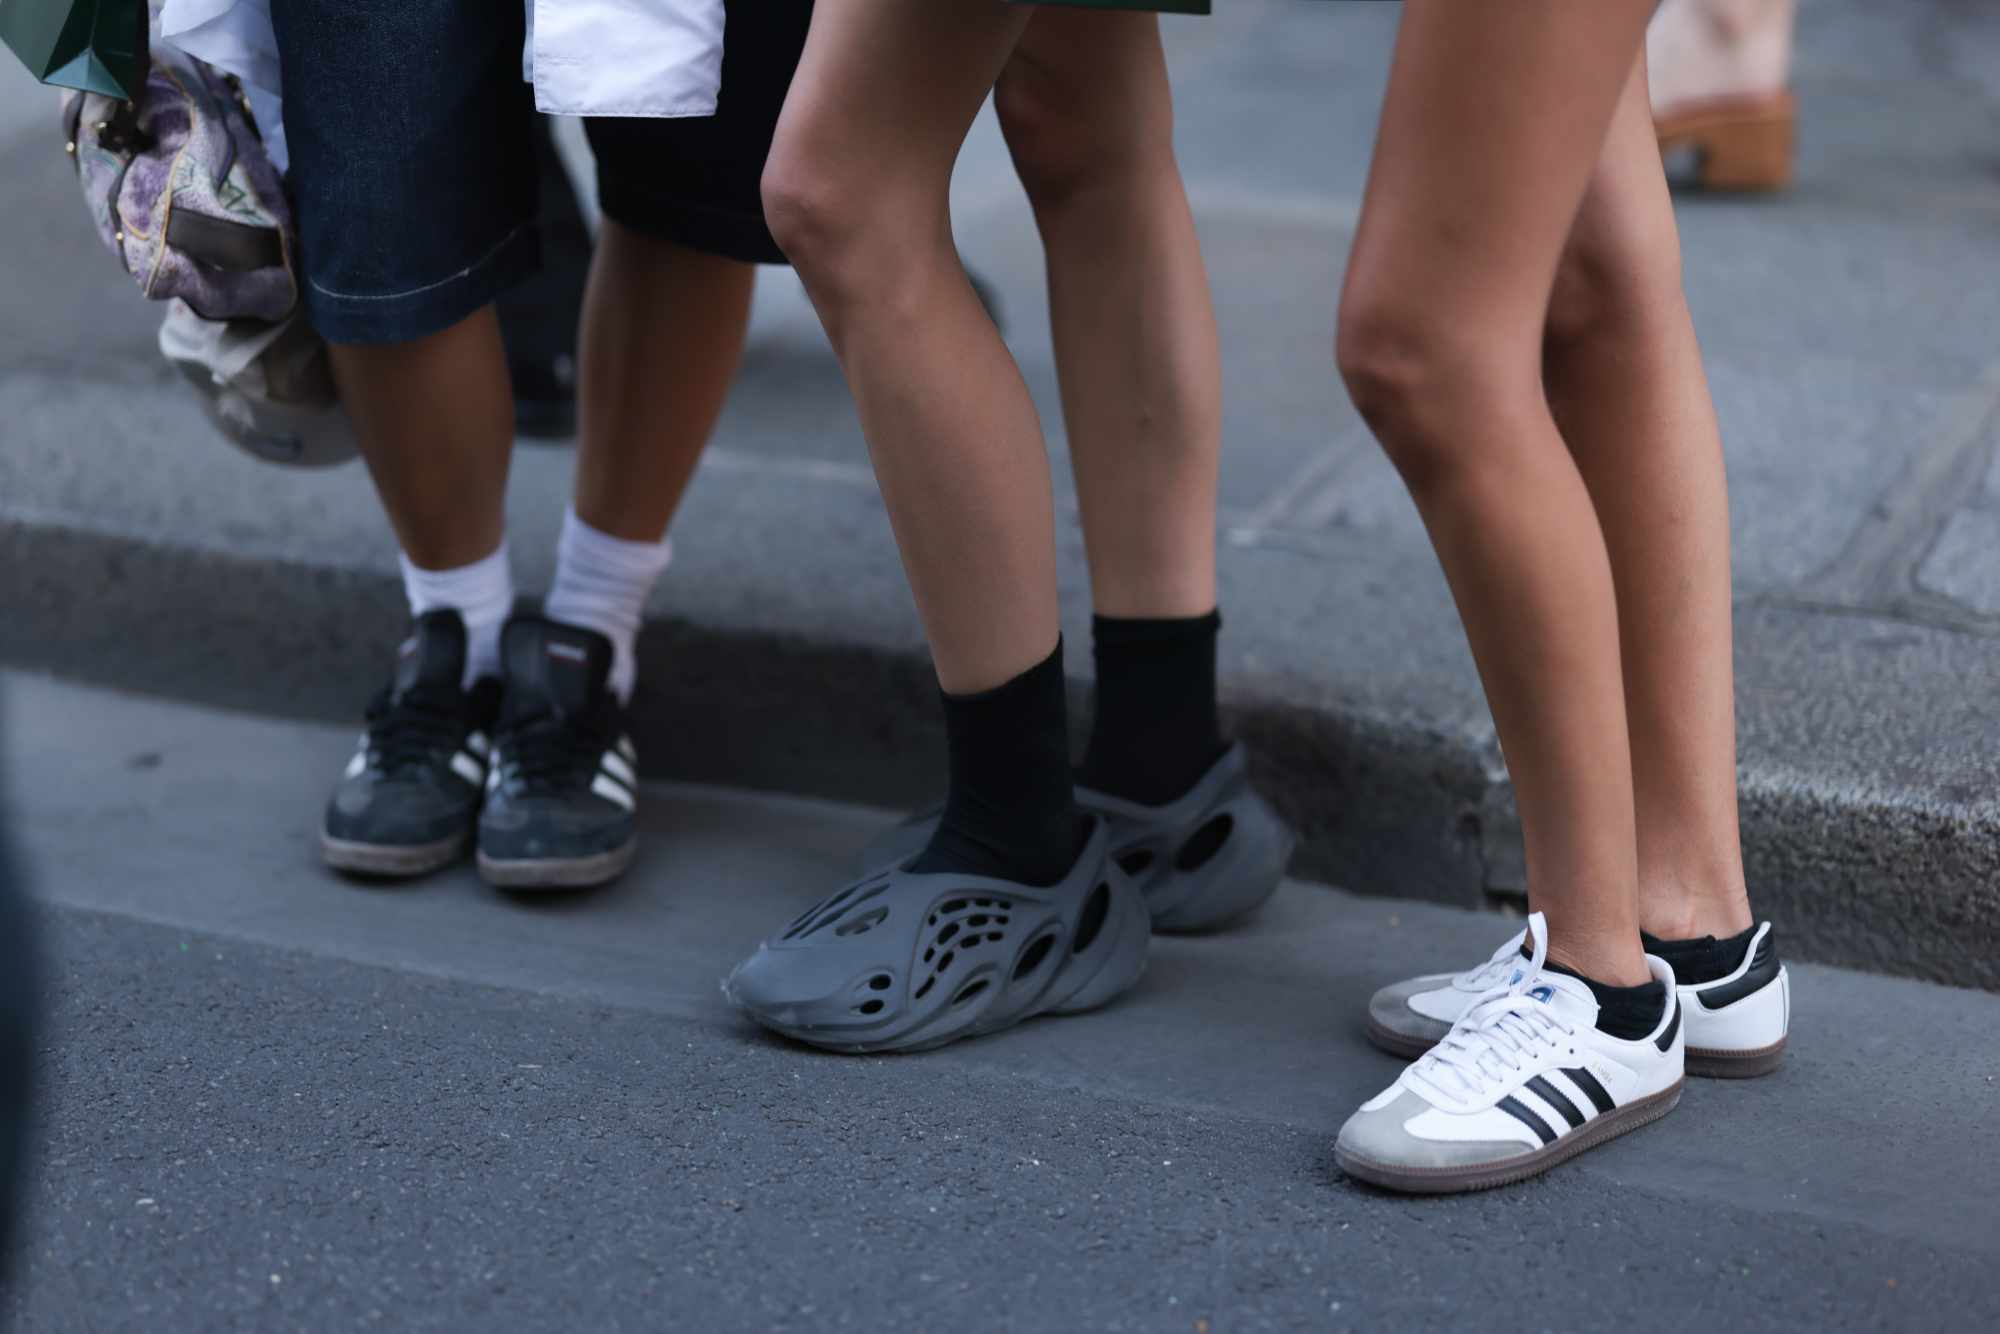 adidas YEEZY Foam Runner sneakers seen on-feet in grey